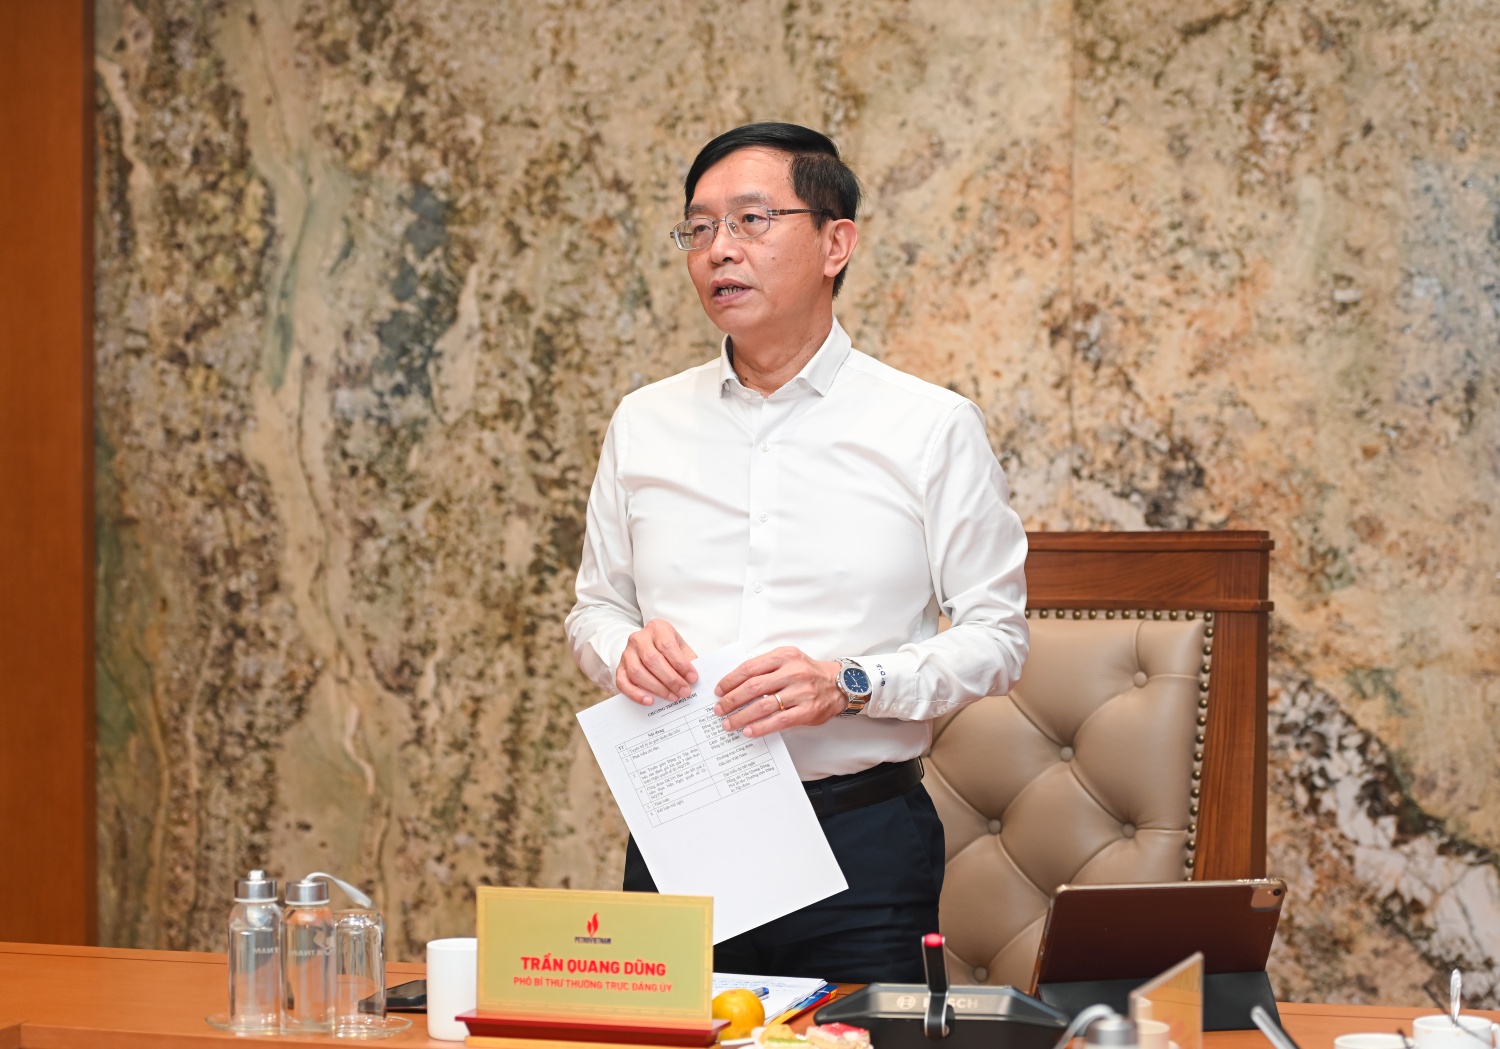 Đồng chí Trần Quang Dũng, Phó Bí thư thường trực Đảng ủy Tập đoàn phát biểu kết luận Hội nghị